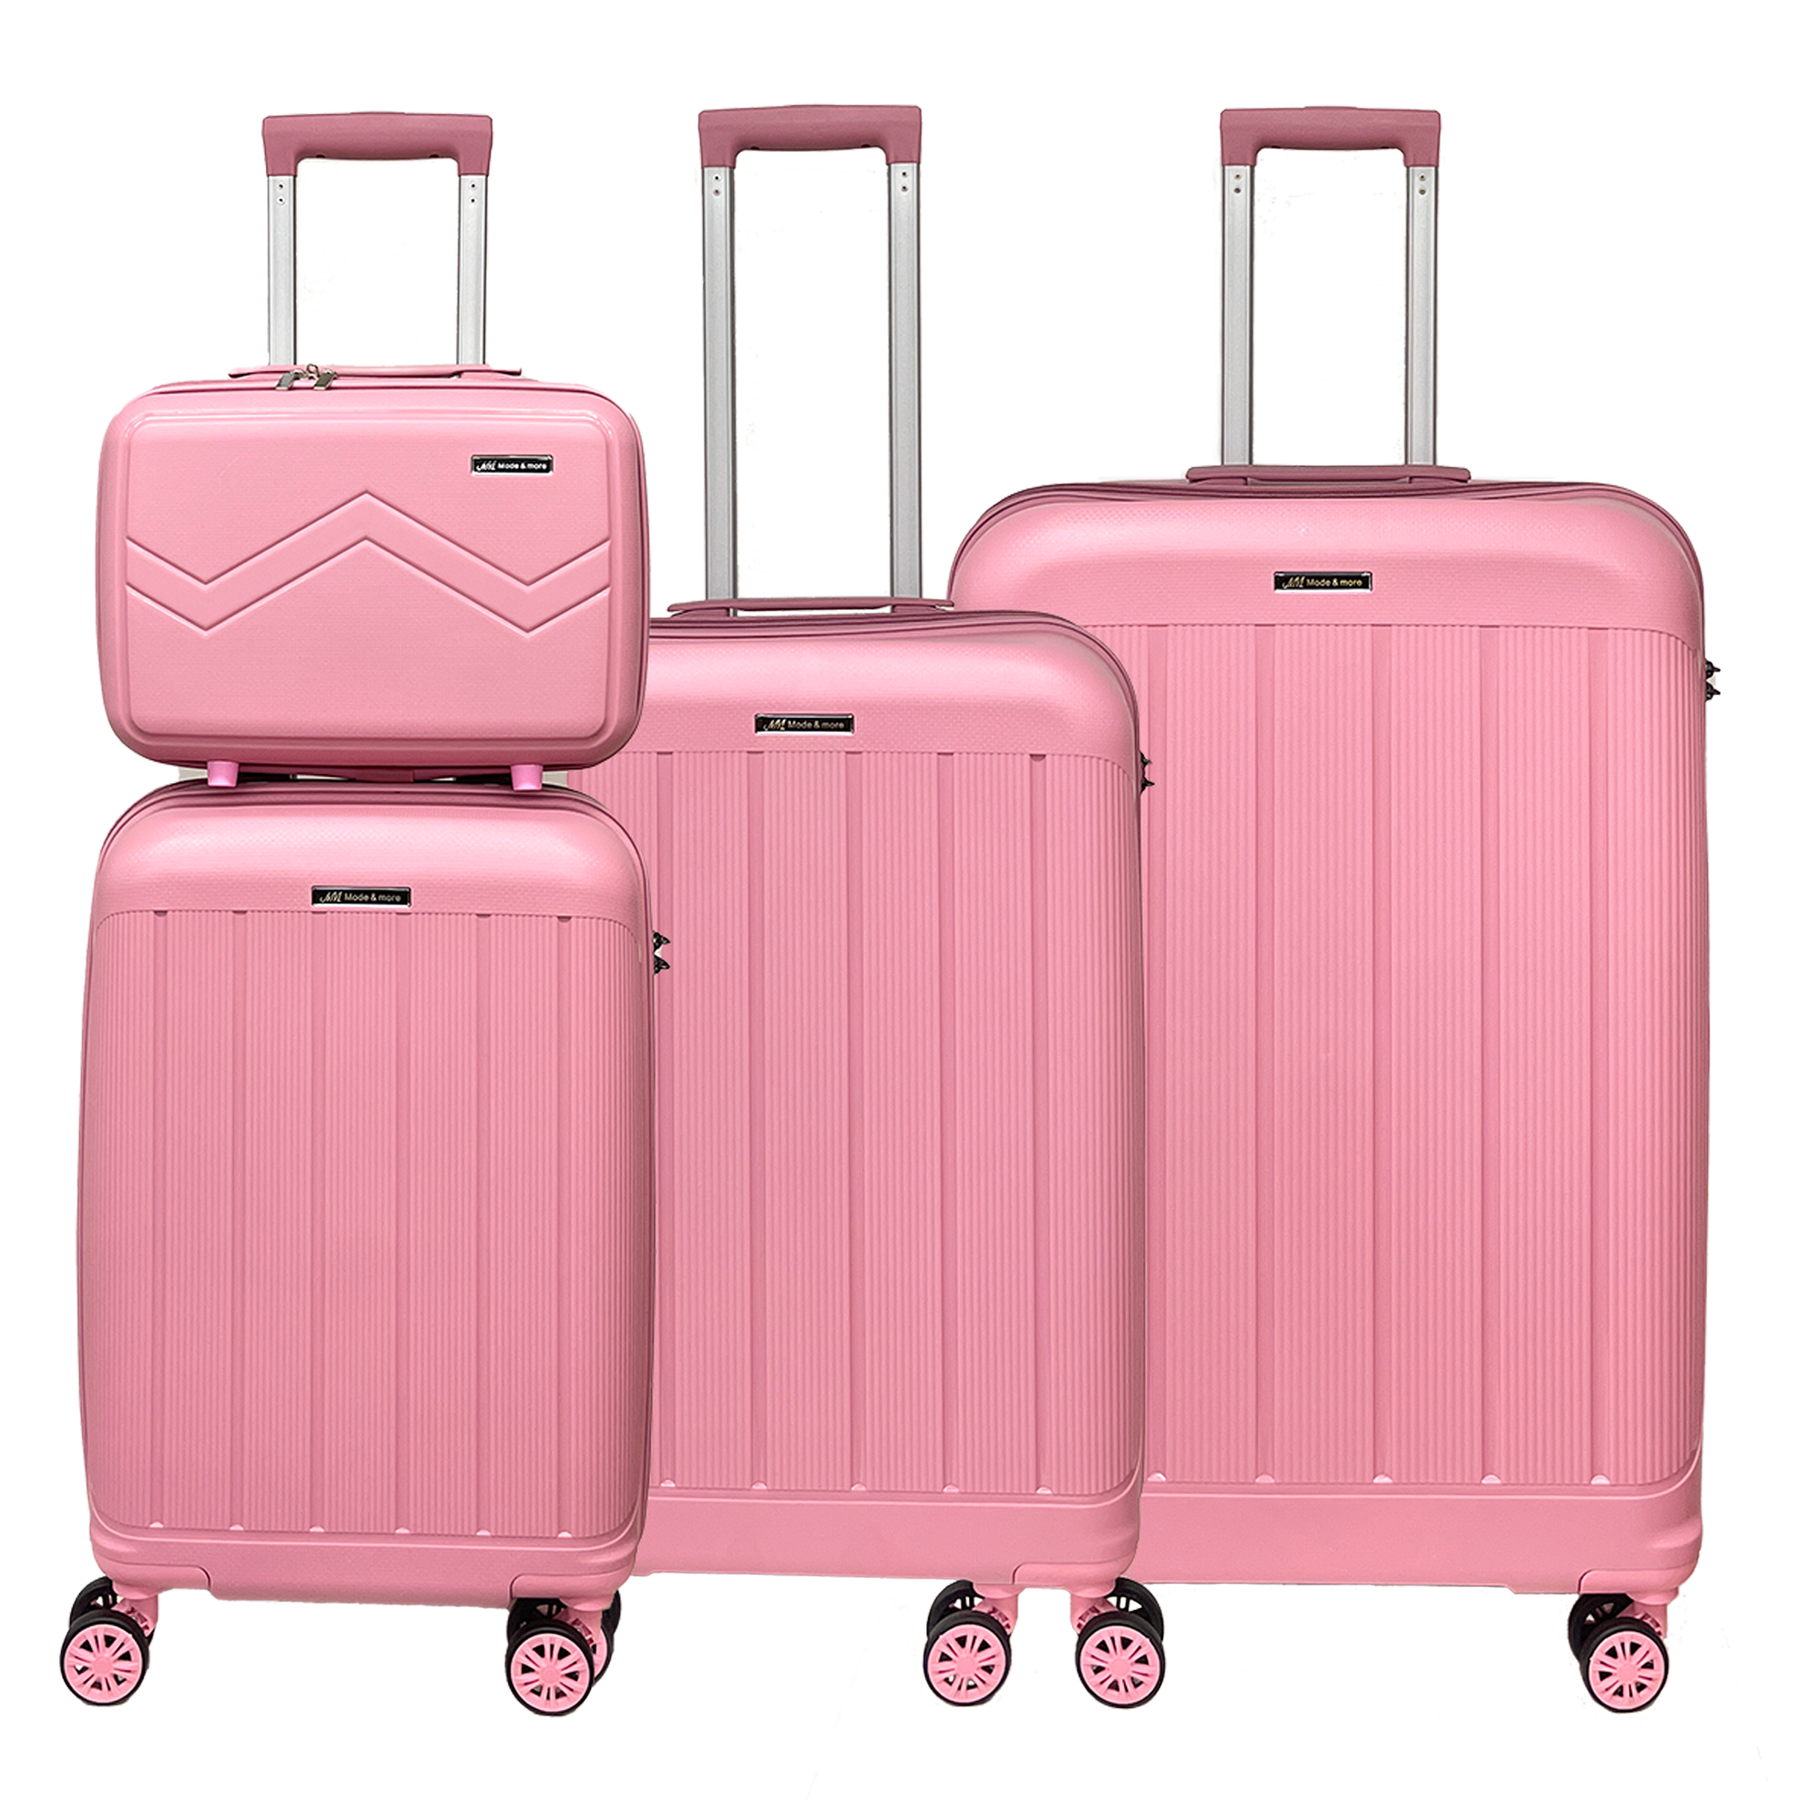 Σετ 4 βαλίτσες μαλακού πολυπροπυλενίου με TSA κλειδαριά και τρόλεϊ ομορφιάς